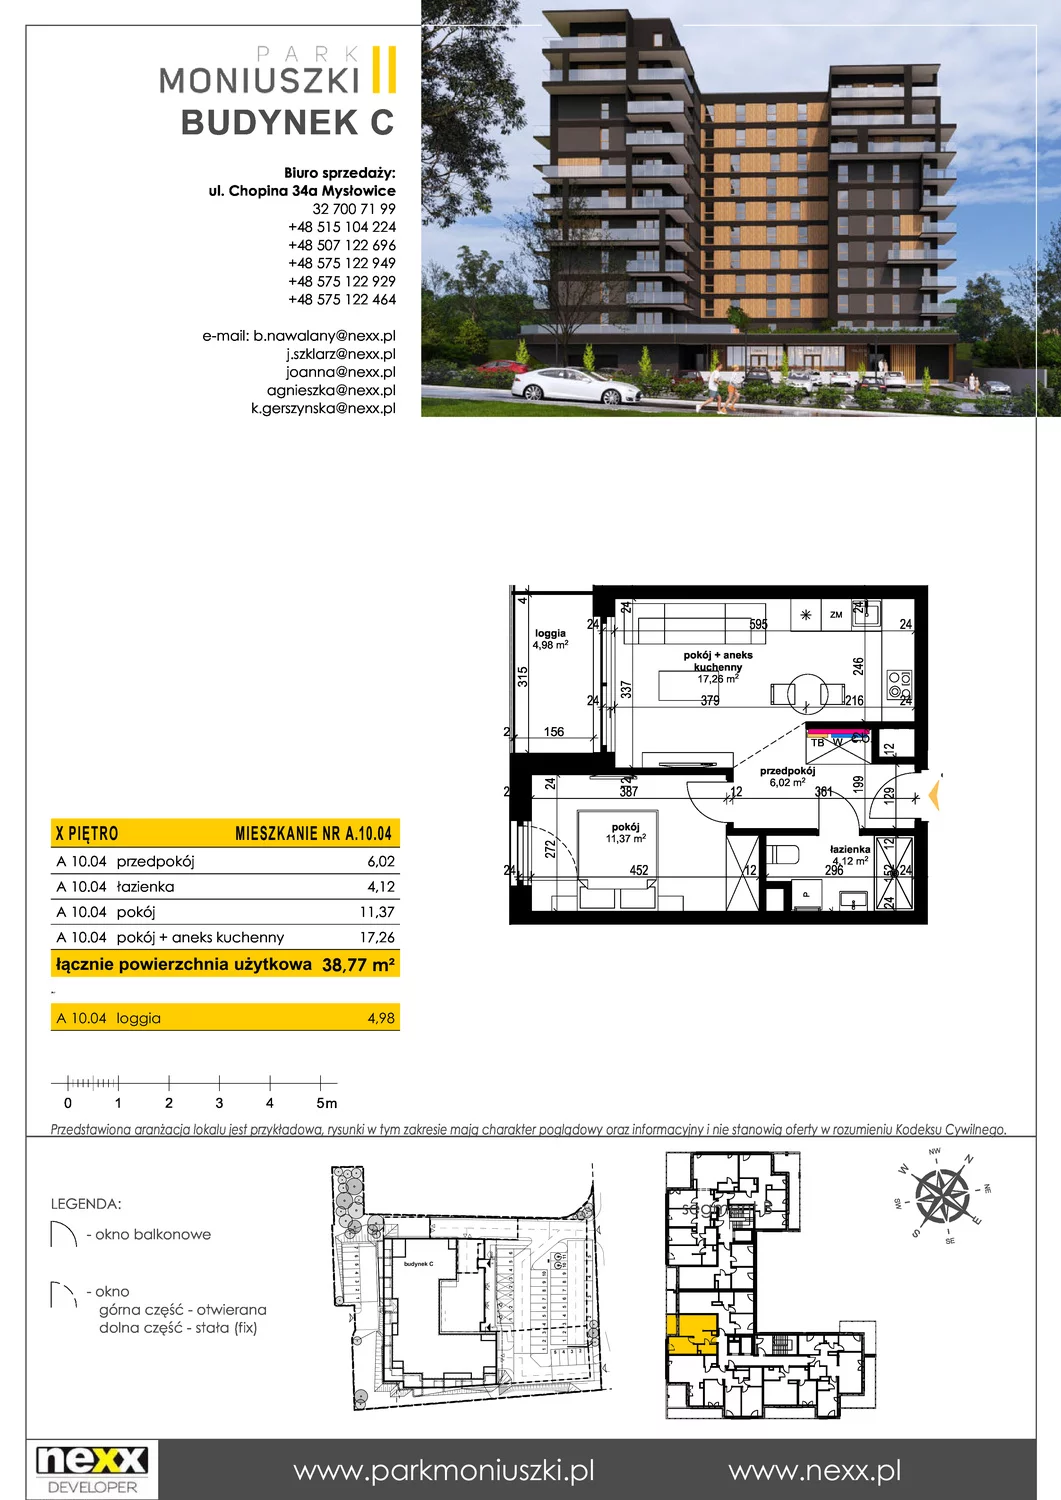 Mieszkanie 38,77 m², piętro 10, oferta nr A 10.04, Osiedle Park Moniuszki, Mysłowice, ul. Okrzei / Wielka Skotnica